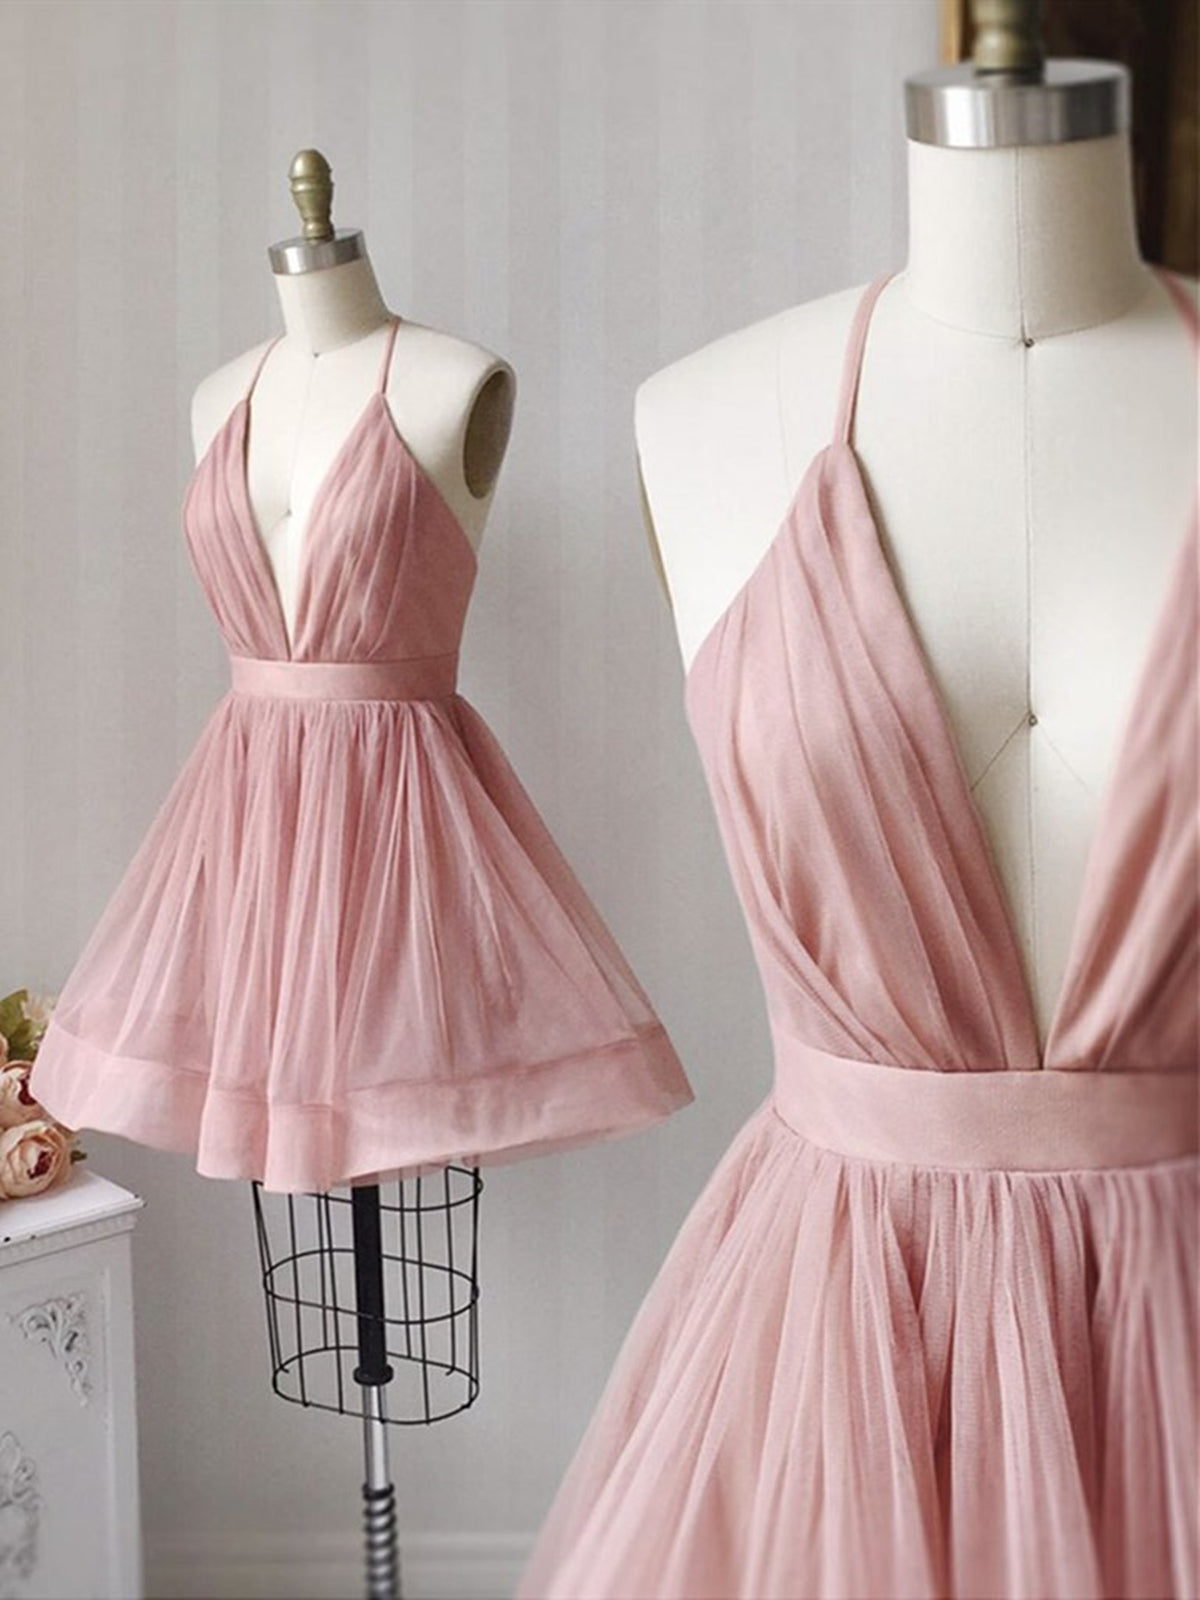 Prom Dresses Online, A Line V Neck Short Pink Prom Dresses, Short Pink V Neck Graduation Homecoming Dresses